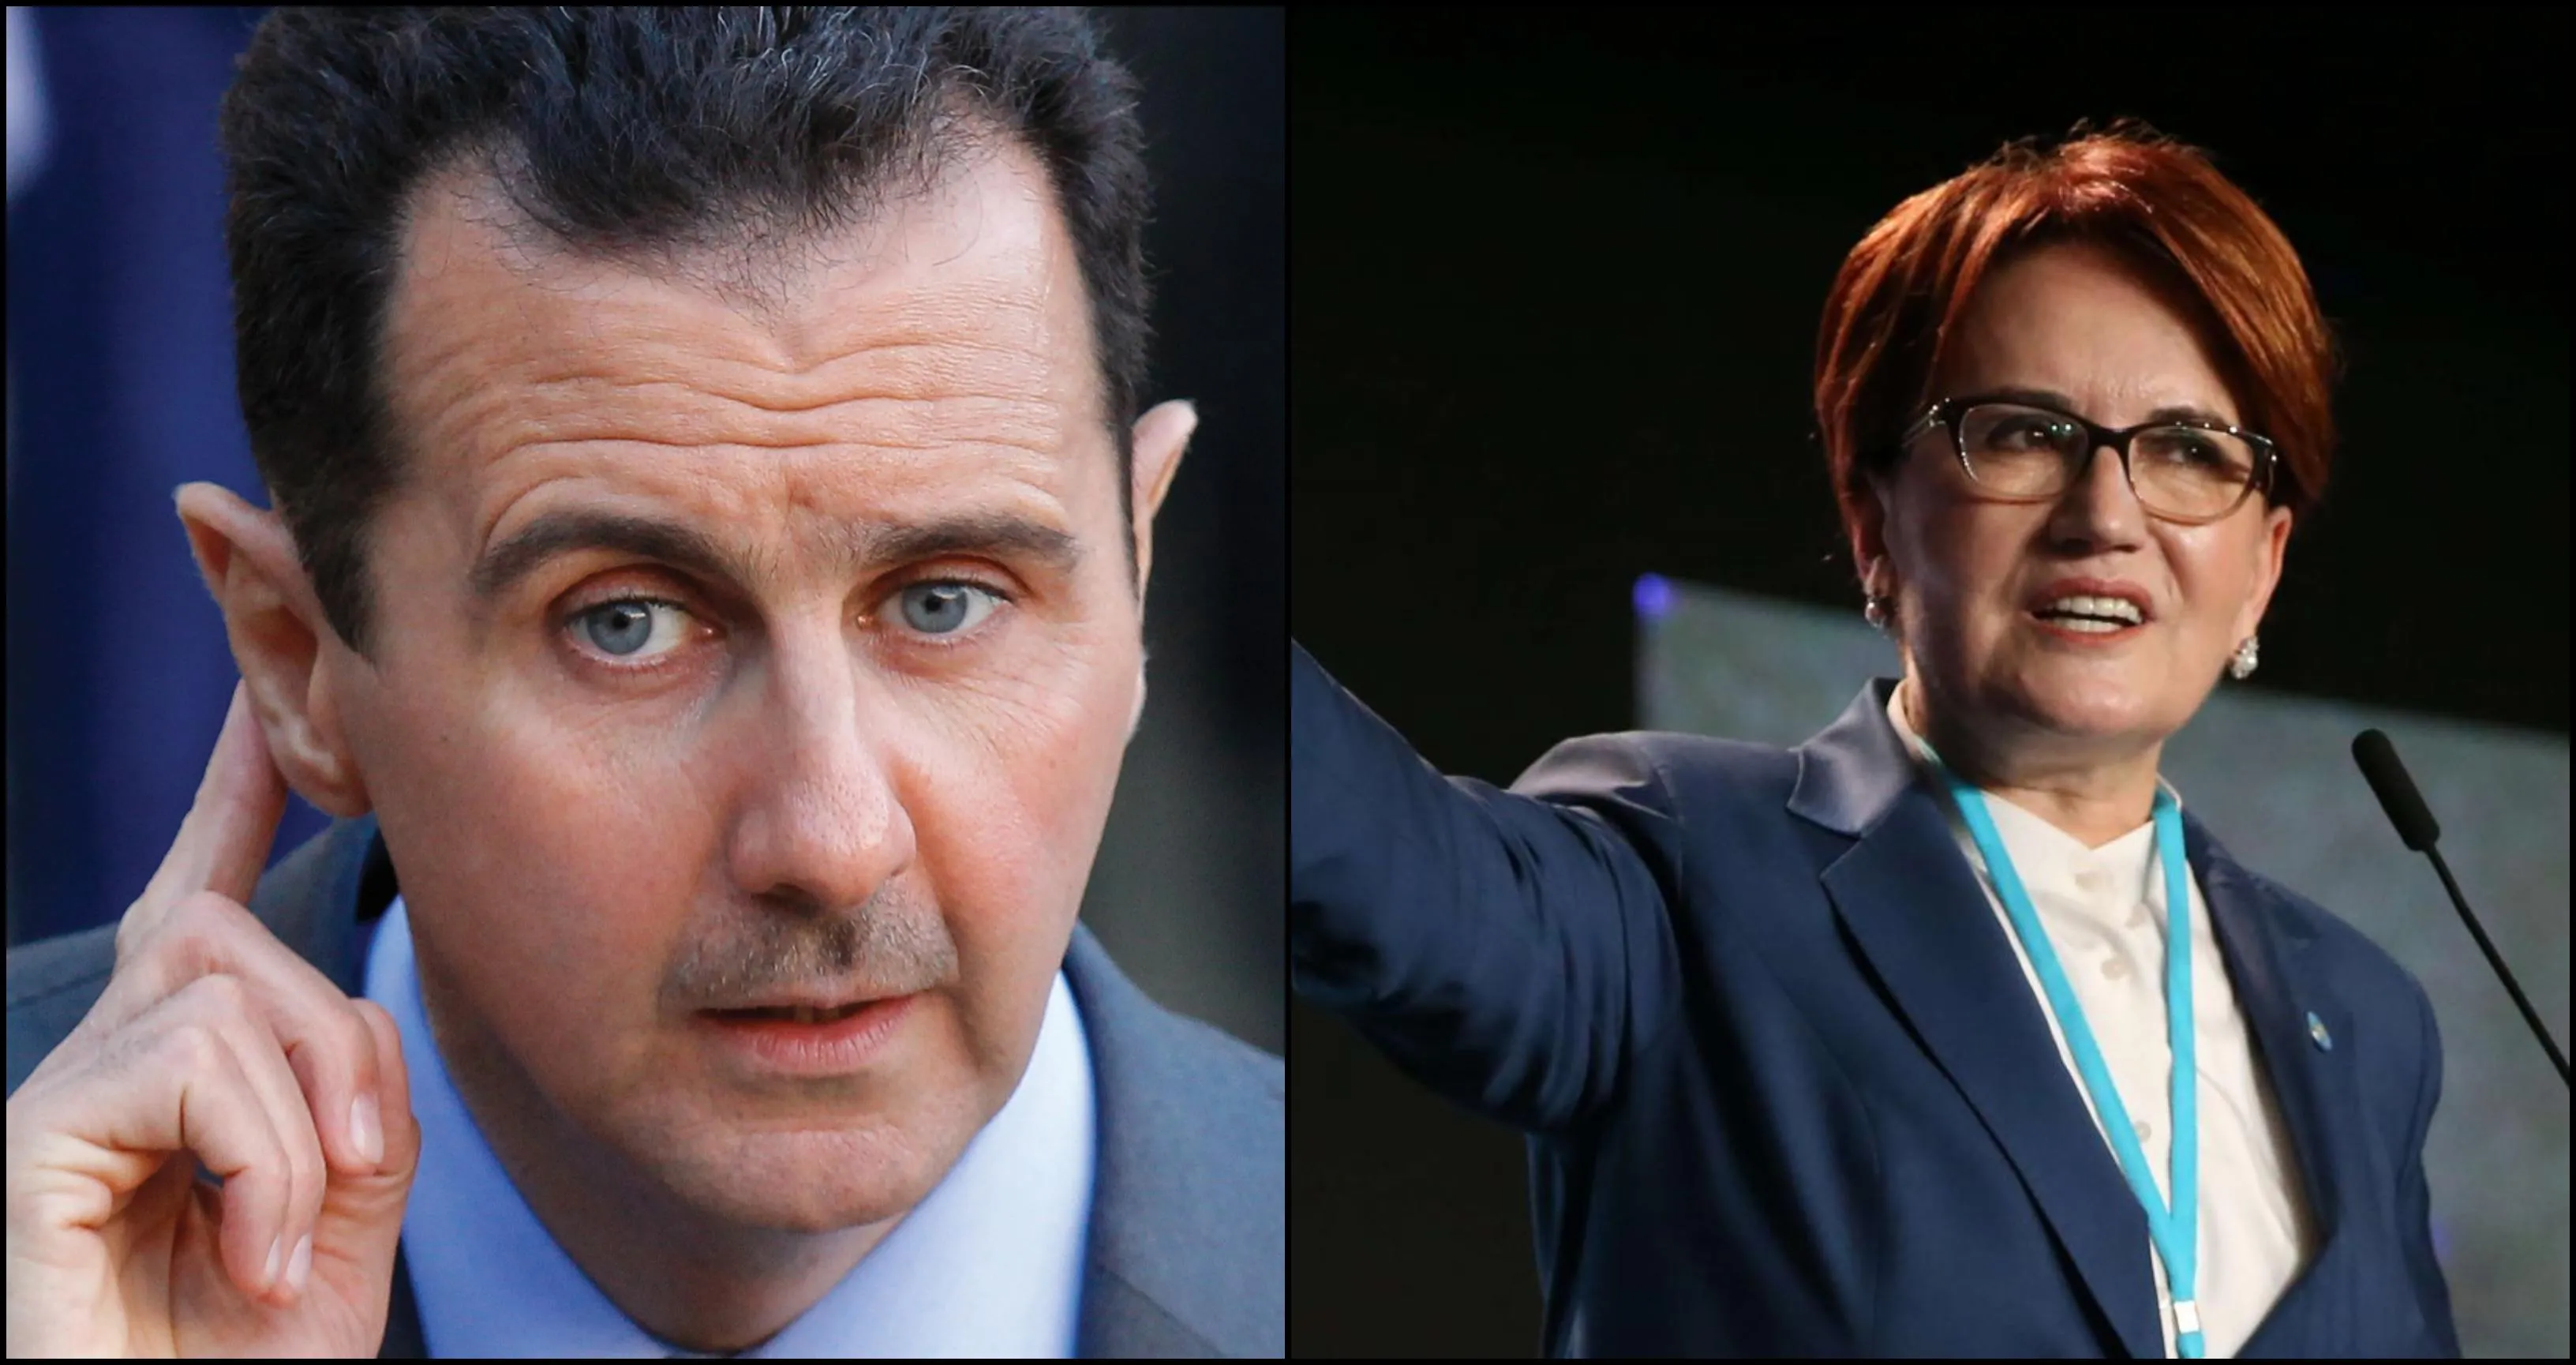 حزب "الجيد" التركي يعلن نيته تقديم طلب للخارجية لعقد لقاء مع الإرهابي "بشار الأسد"